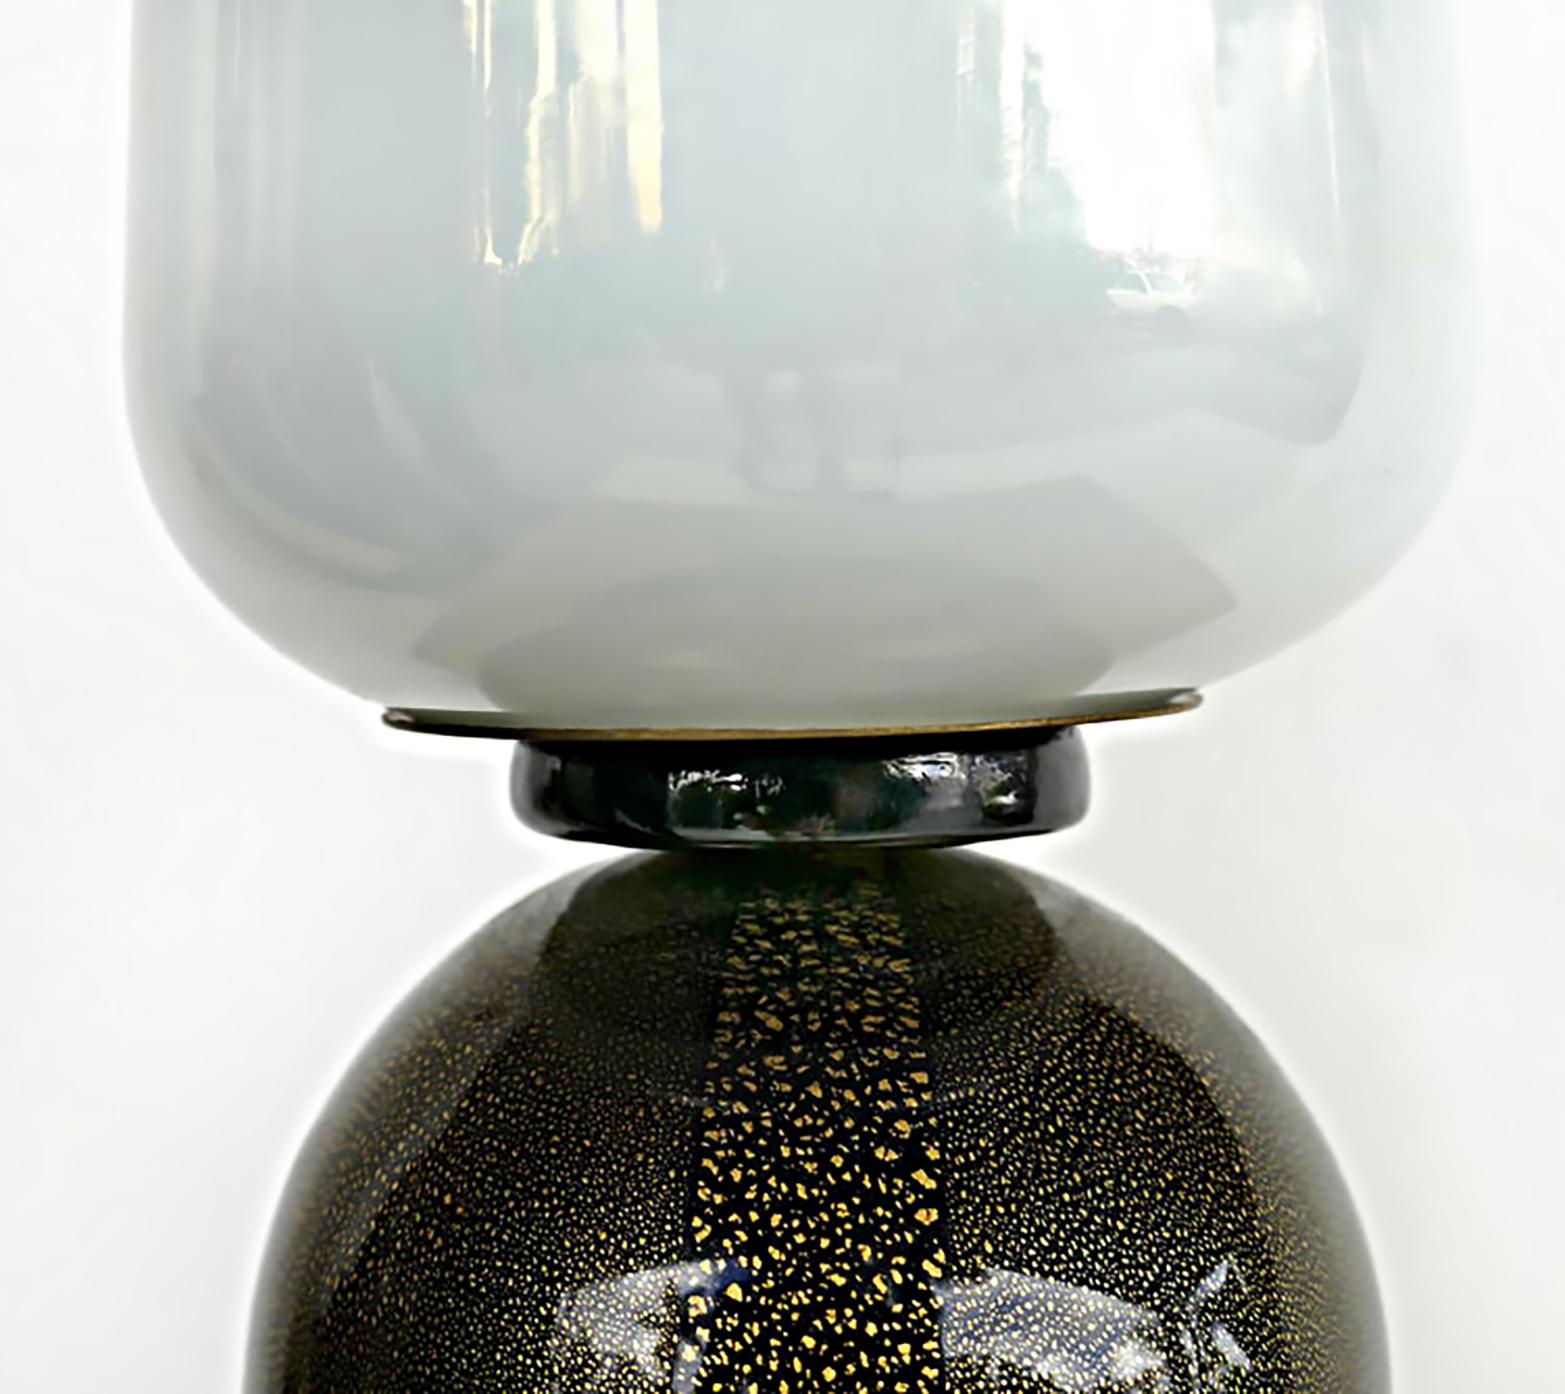 Lampe de table italienne en verre de Murano, Barovier&Toso, années 1950

Nous proposons à la vente une lampe de table en verre Barovier&Toso datant des années 1950. La lampe est câblée pour des prises électriques américaines et dispose d'un